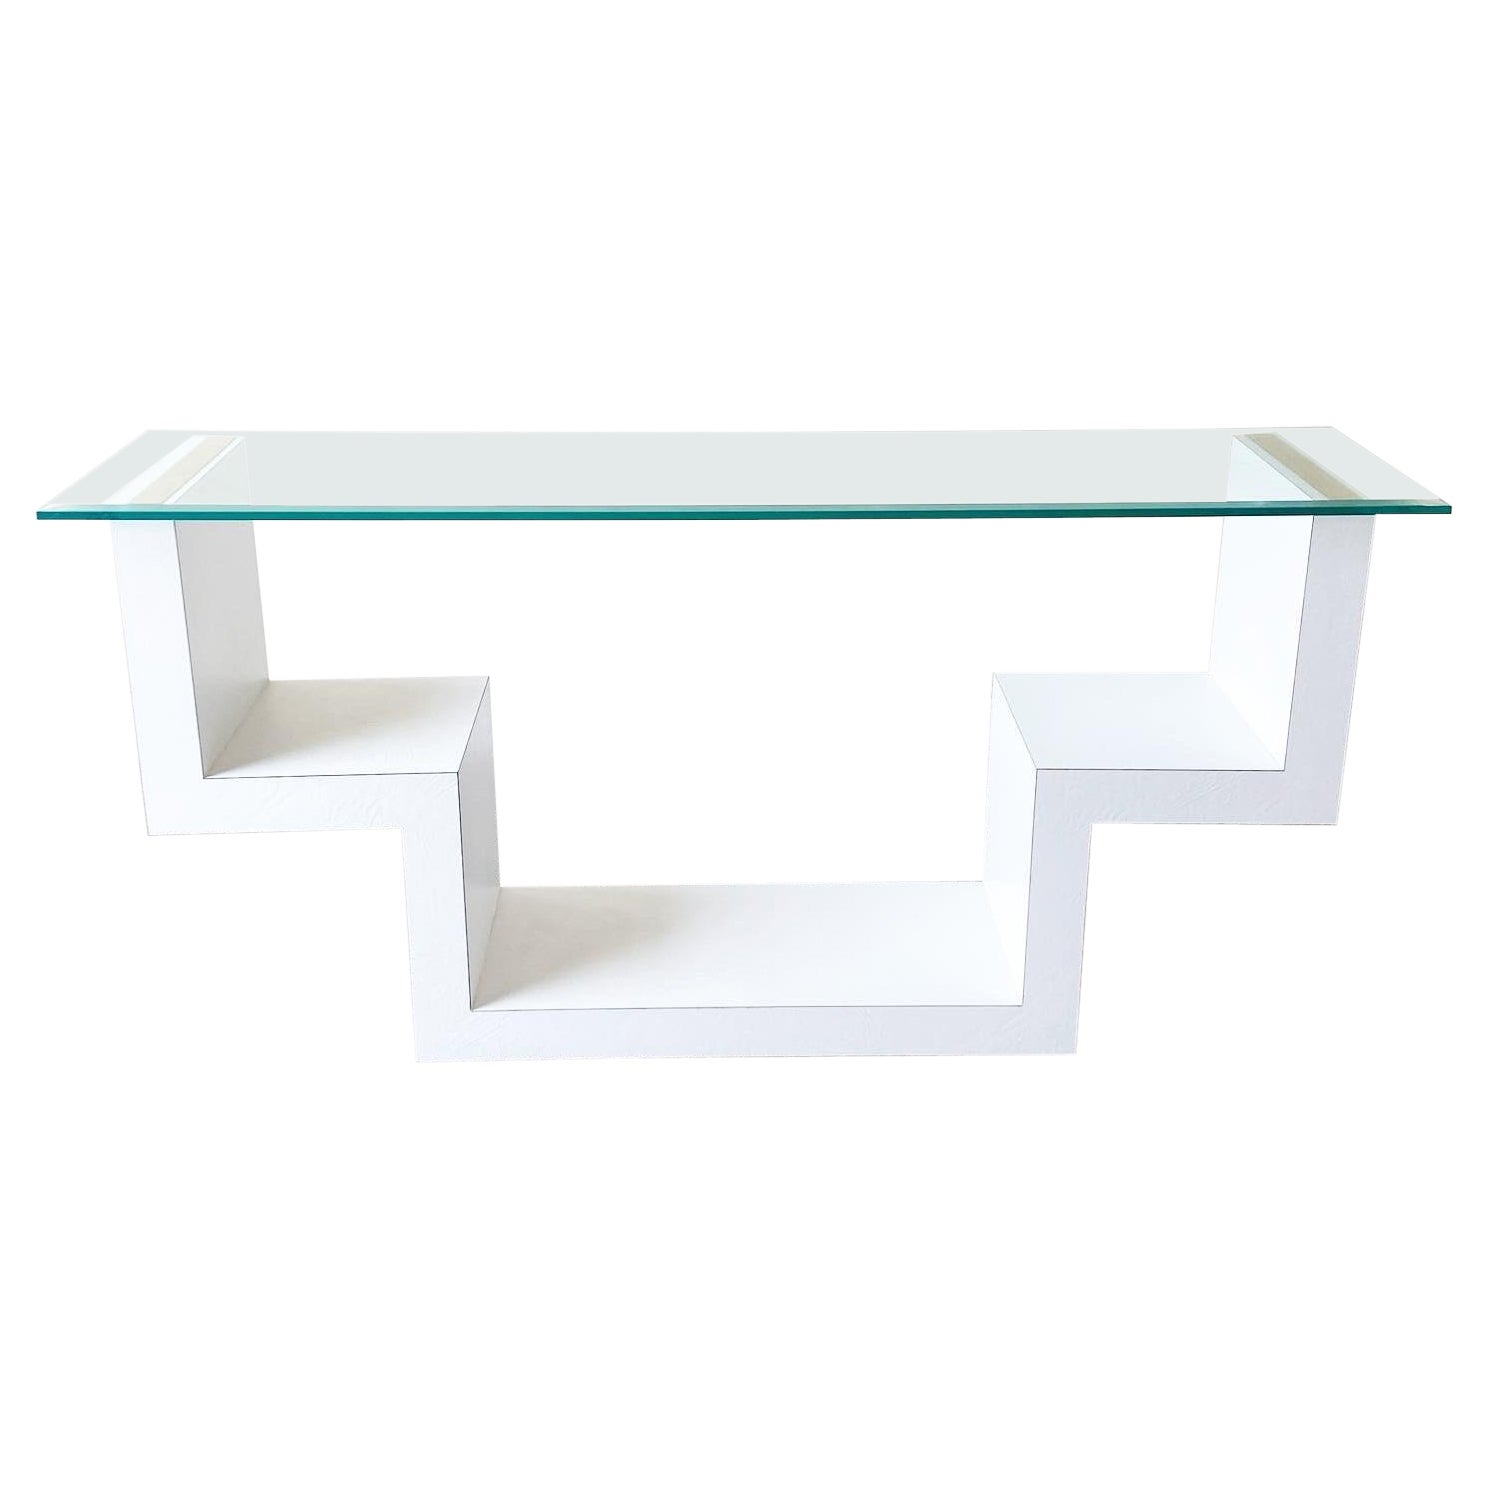 Table console postmoderne des années 1980 en simili cuir blanc et dessus en verre stratifié